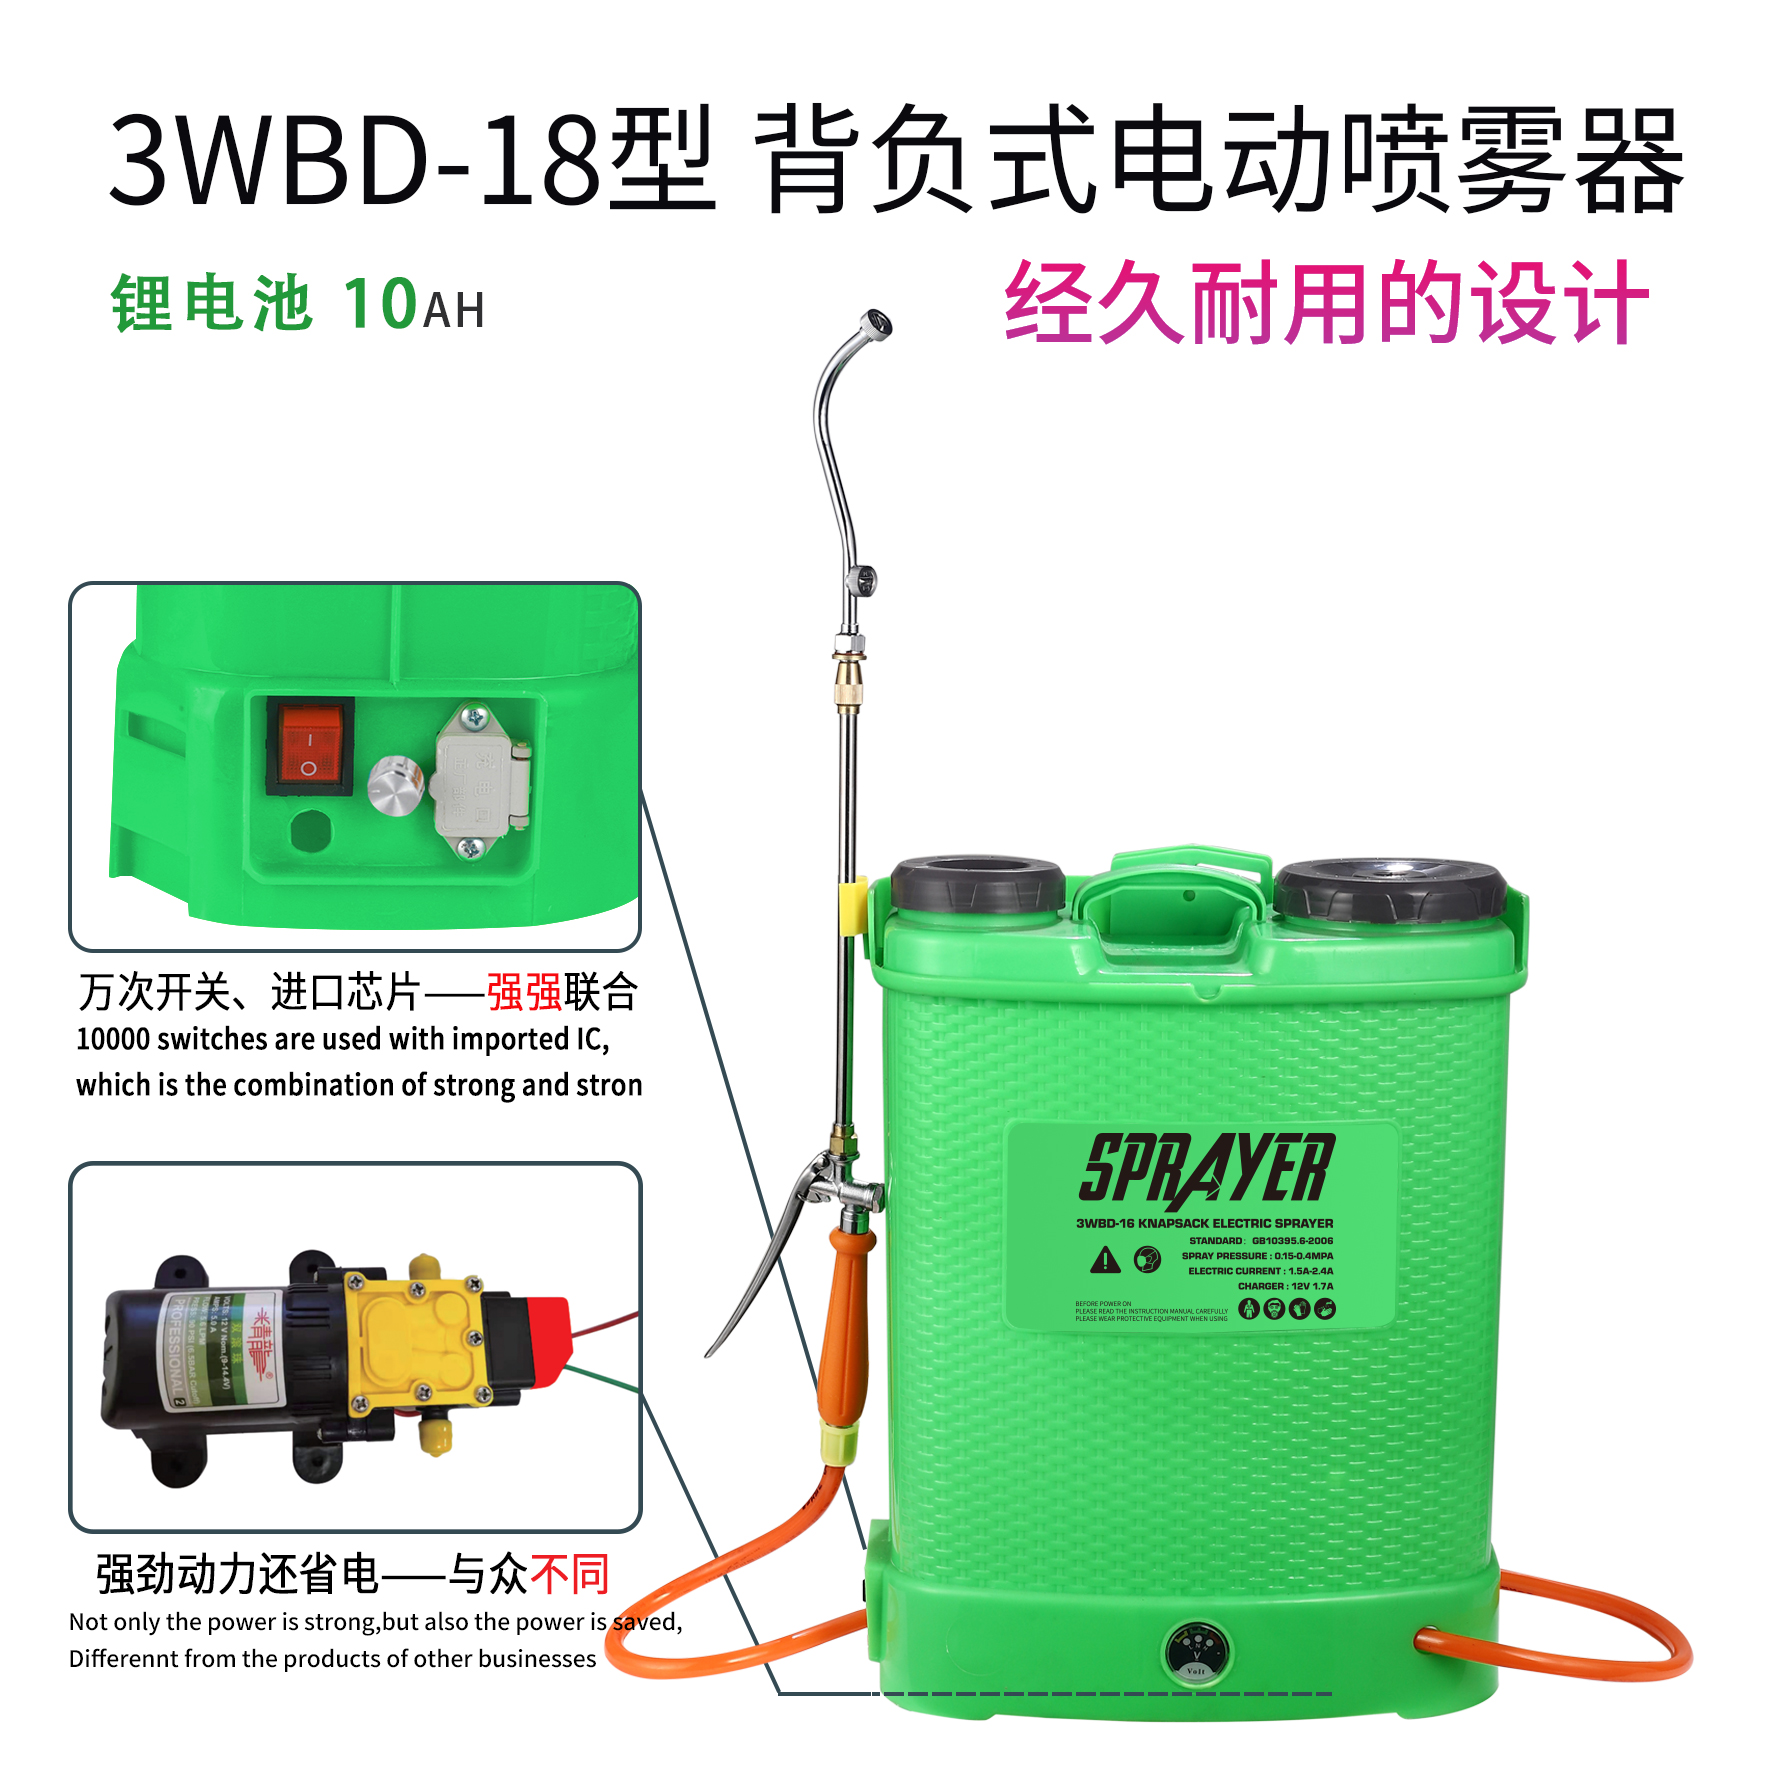 精龙电动喷雾器 旋钮调速 3WBD-18型 背负式 电动喷雾器 锂电池12V10AH